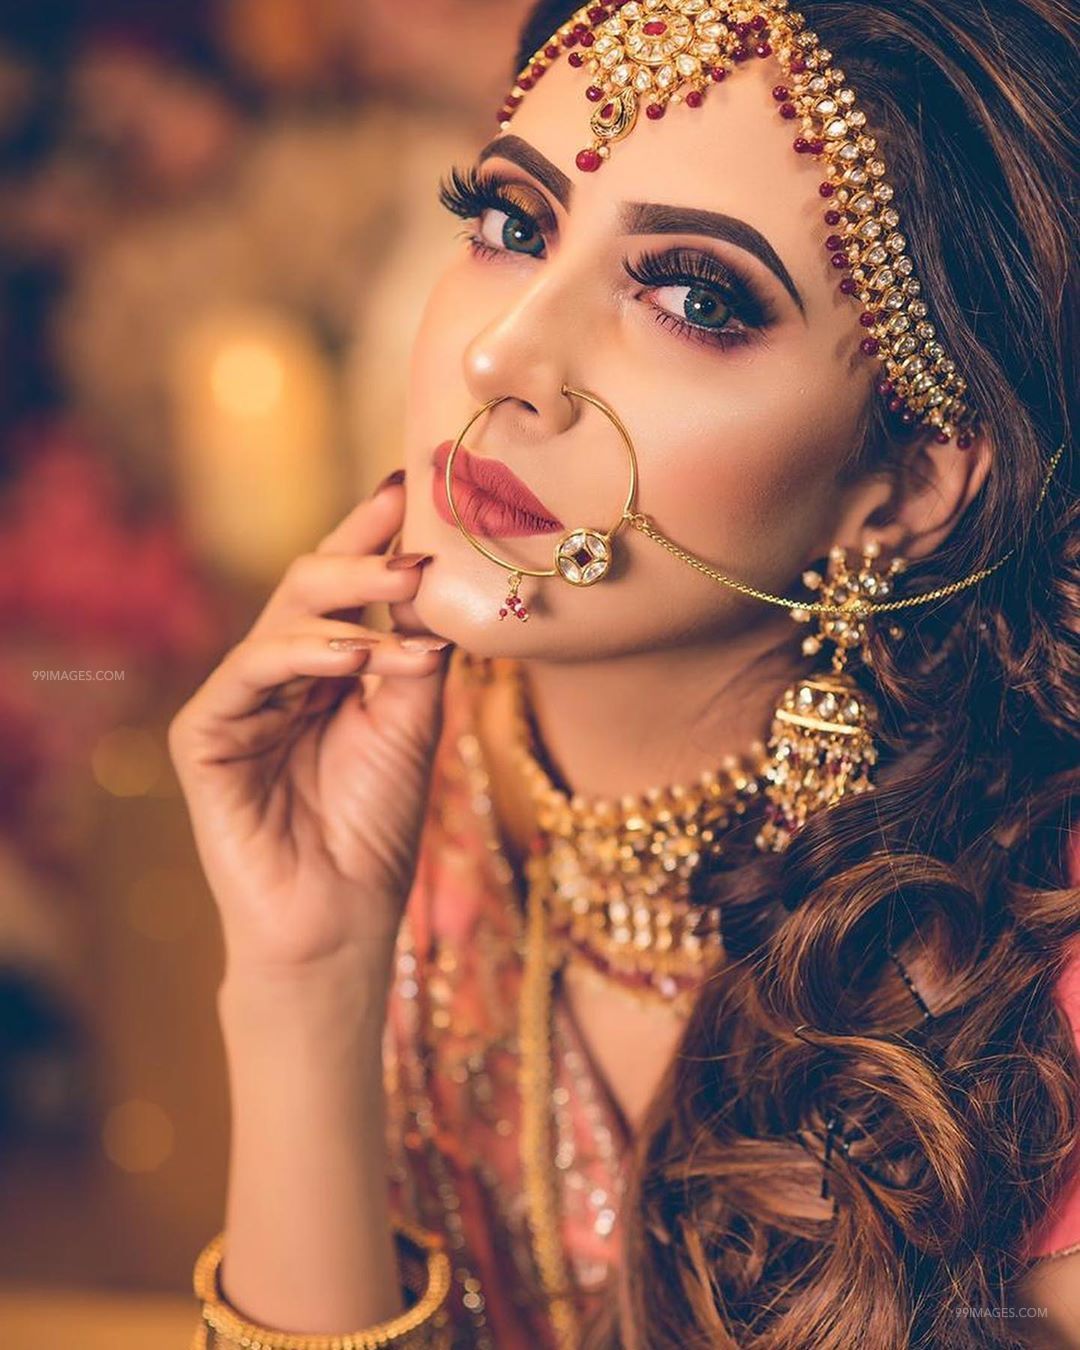 Bidya Sinha Saha Mim Hot HD Photo & Mobile Wallpaper (1080p) #bidyasinhasahamim #actress #mo. Bridal poses, Indian bridal makeup, Bridal portrait poses